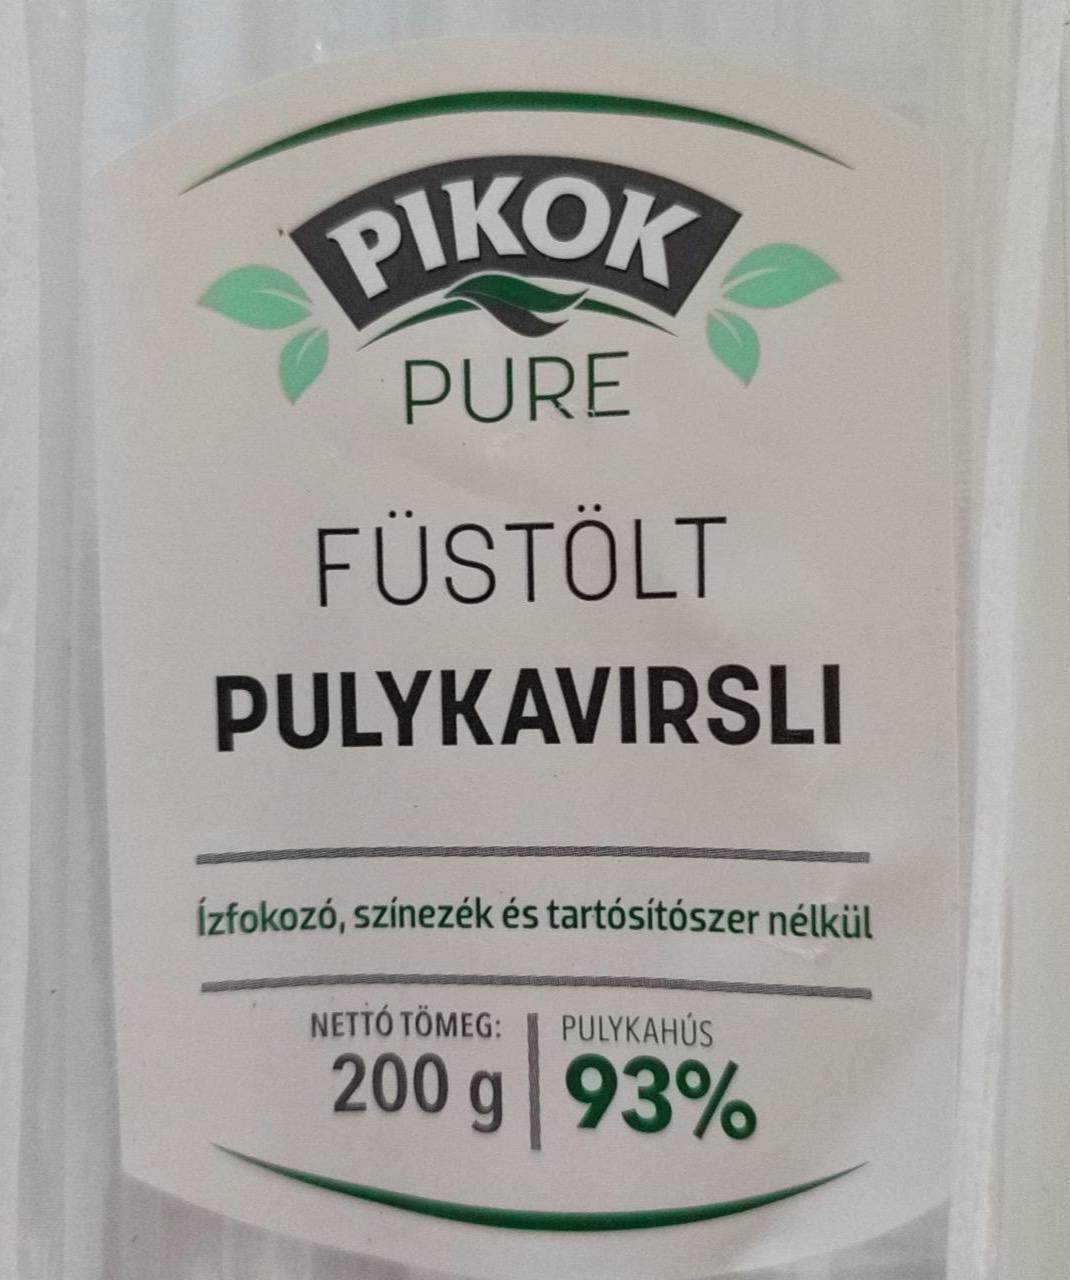 Képek - Füstölt pulykavirsli 93% Pikok Pure